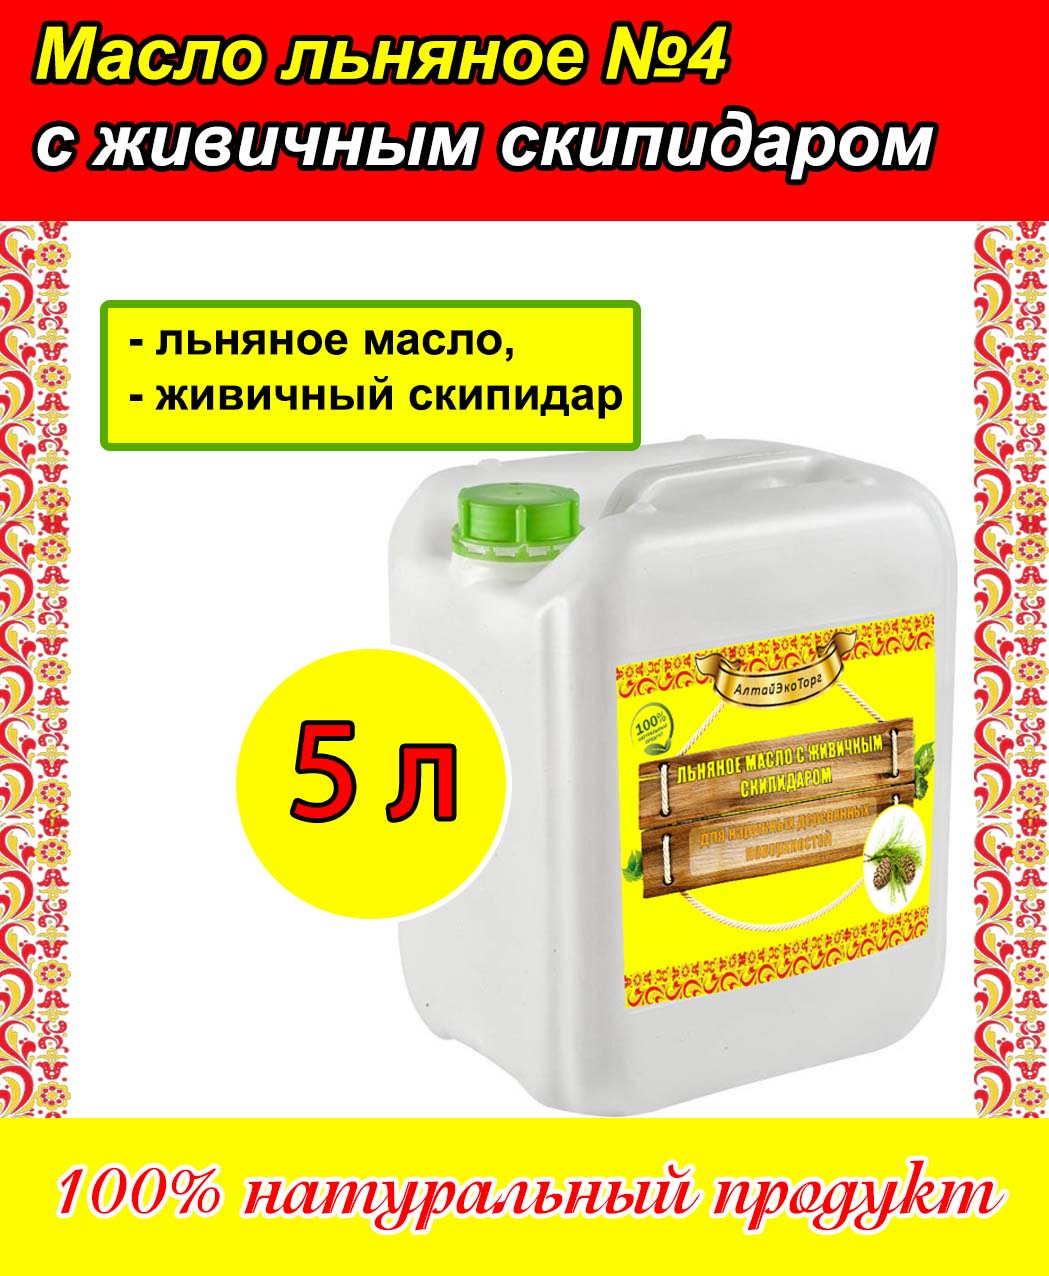 масло льняное для дерева с живичным скипидаром 5 л Масло льняное для дерева с живичным скипидаром (5 л)